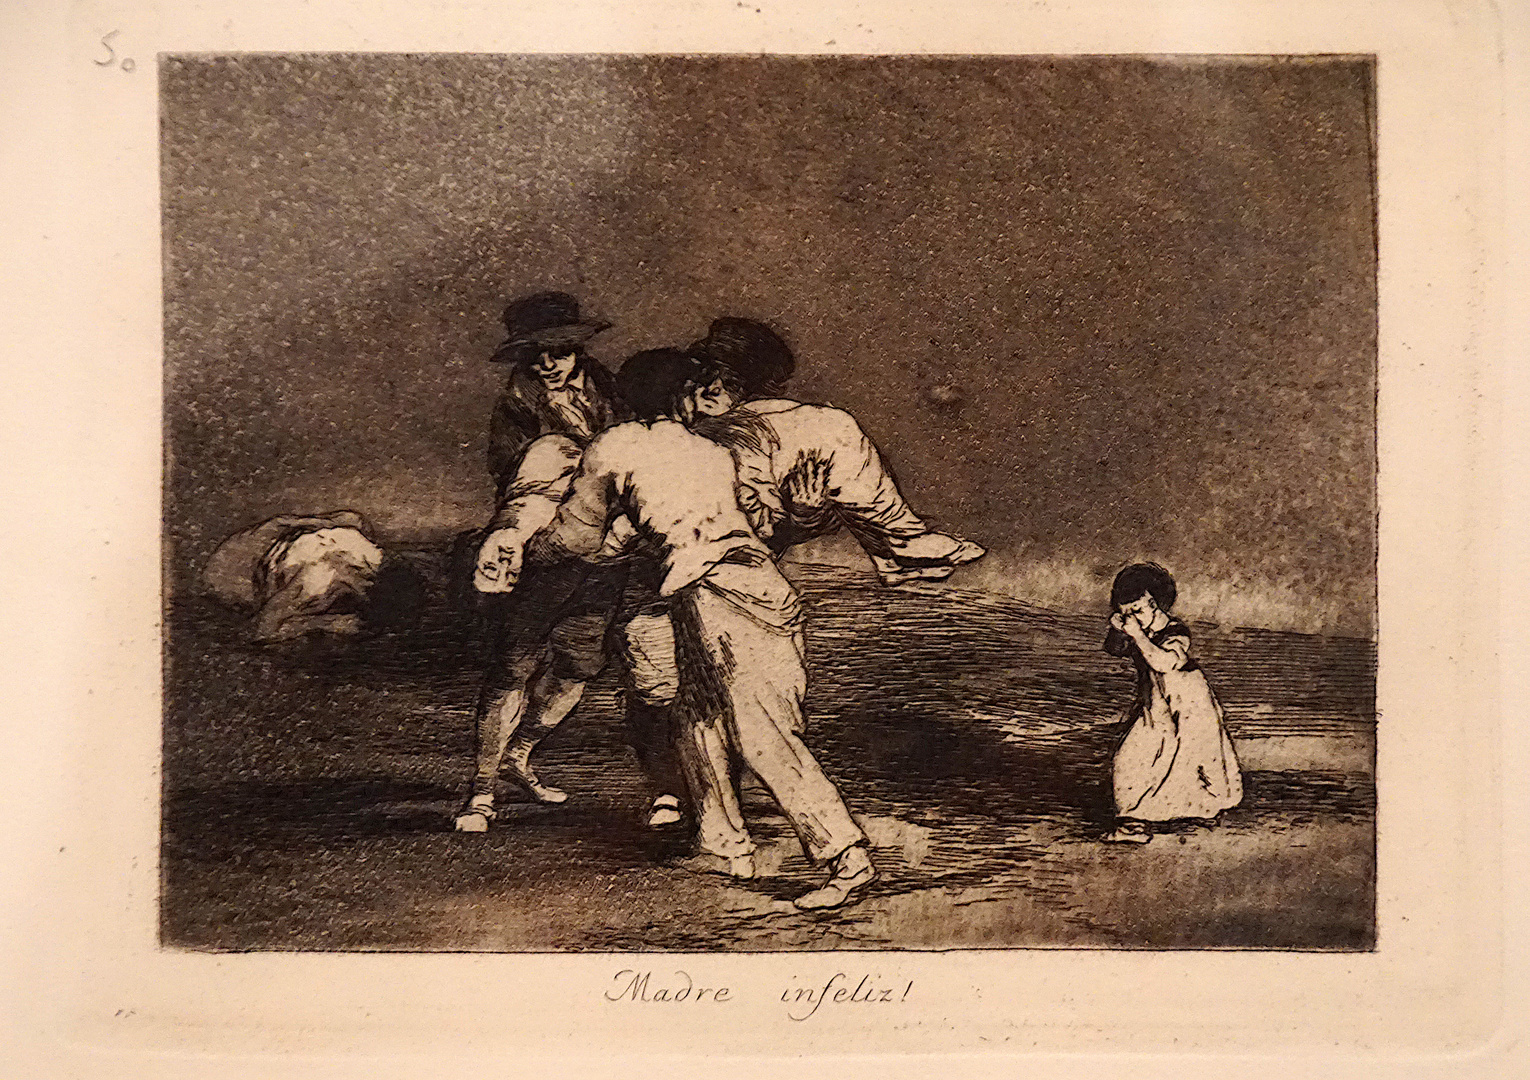 Francisco de Goya: Madre infeliz! (ca. 1813)